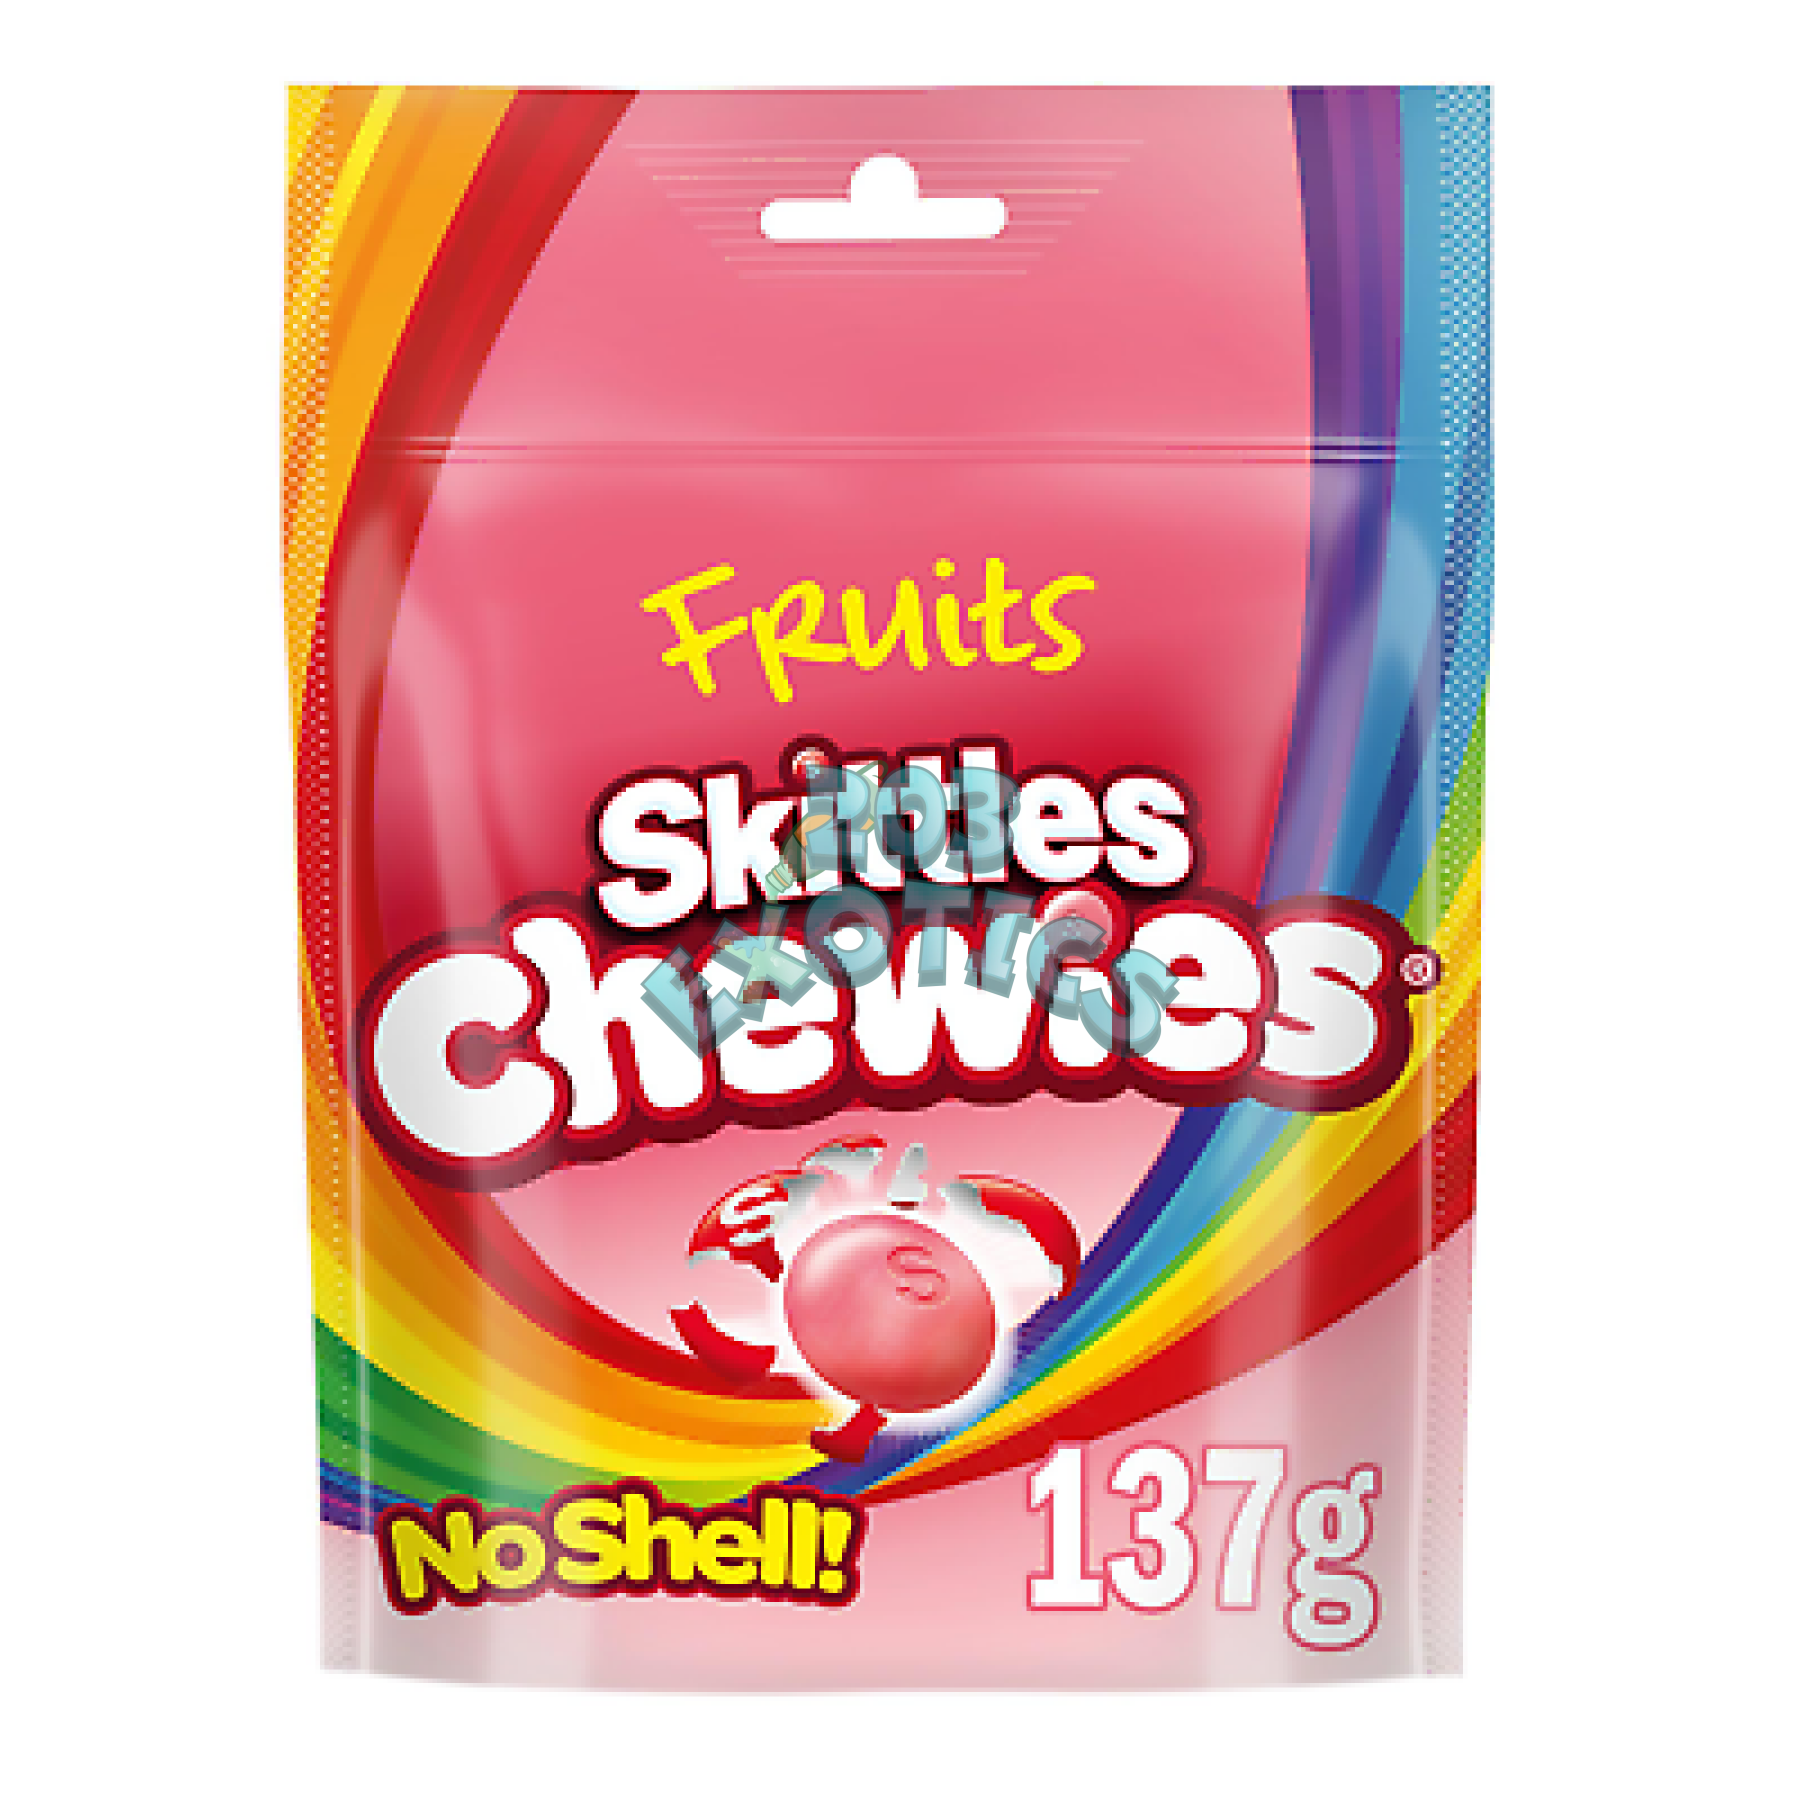 Skittles Chewies (137G)(No Shell)